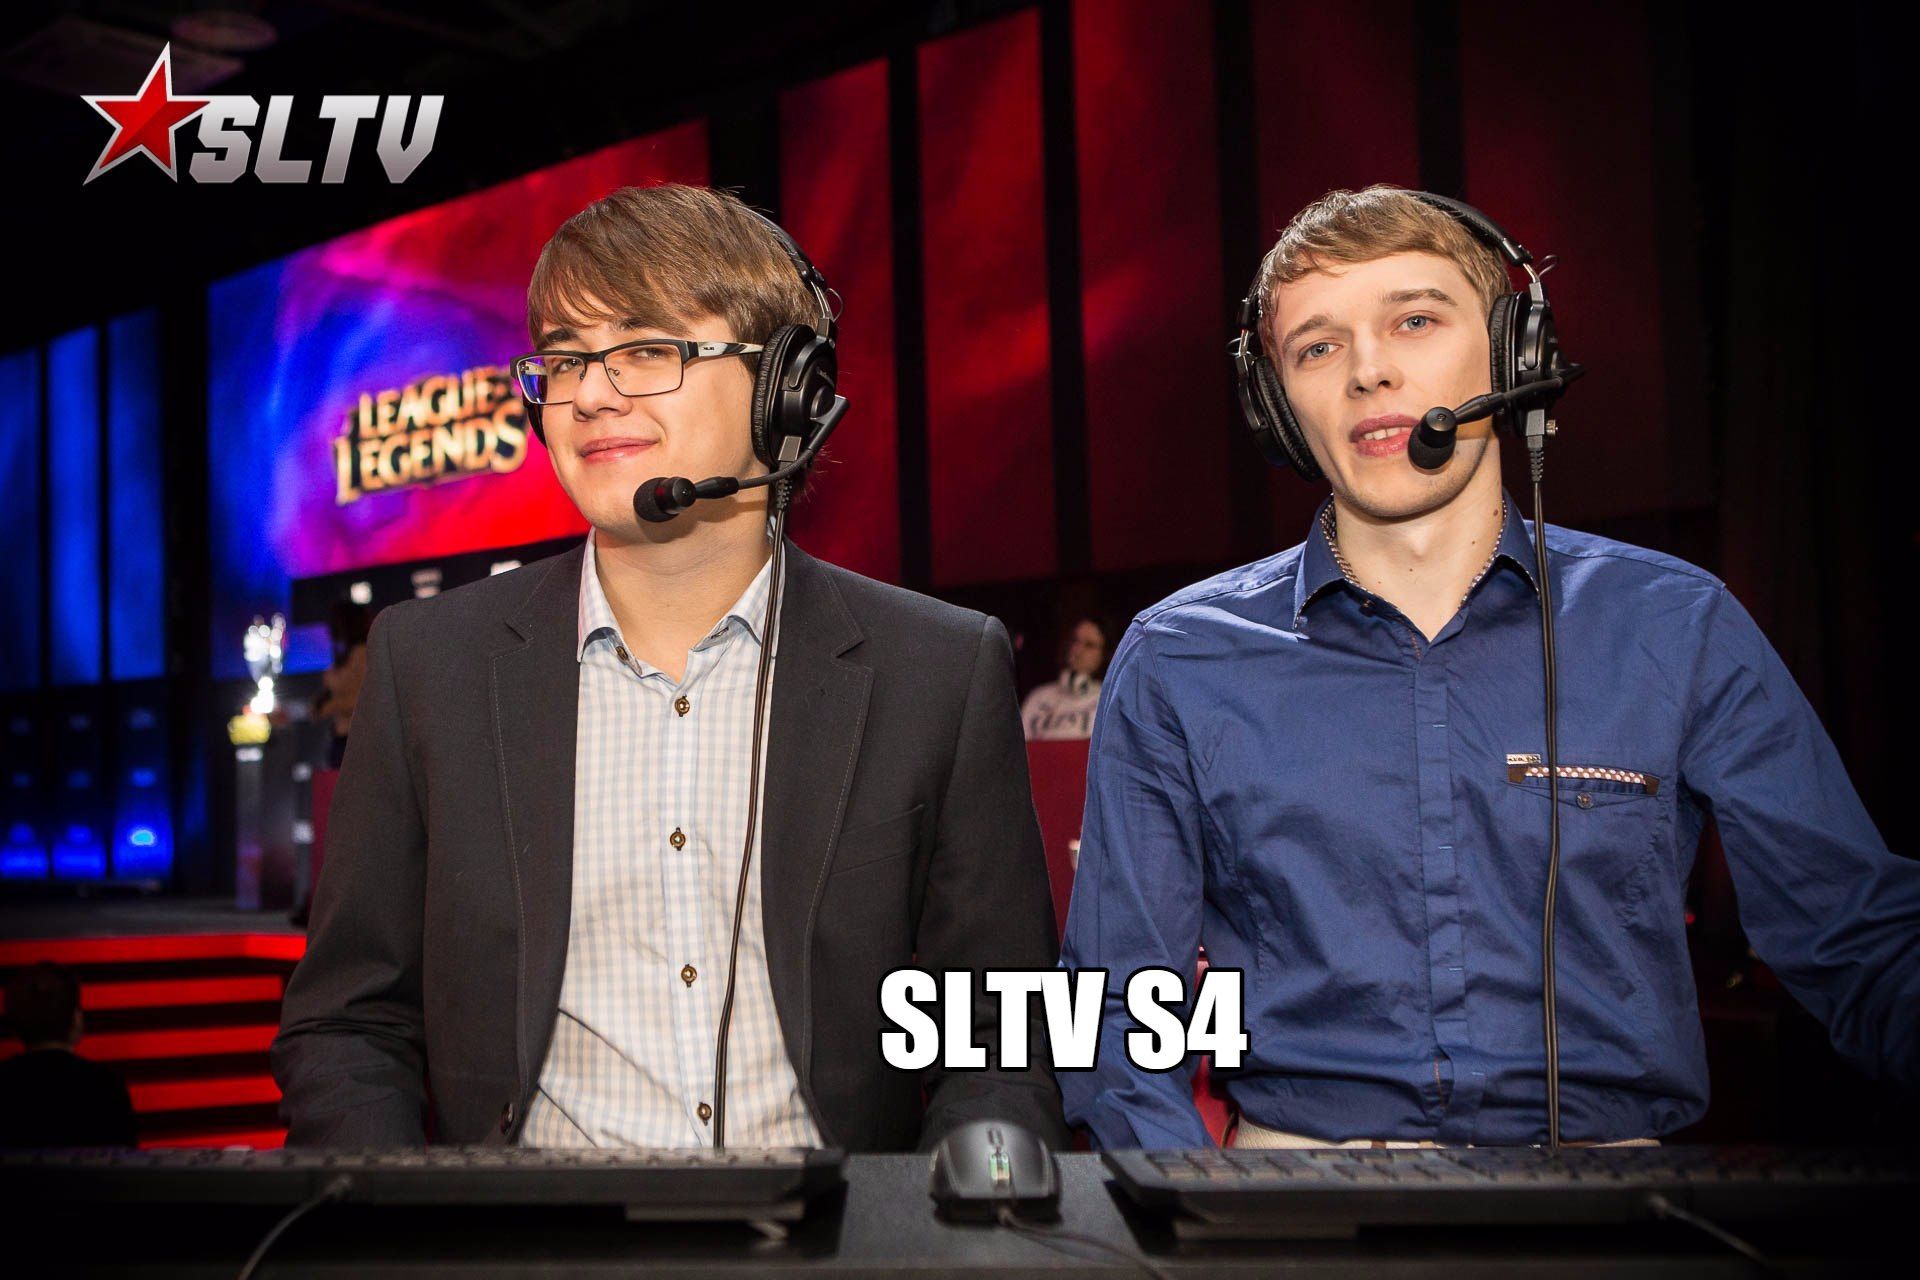 SLTV S4